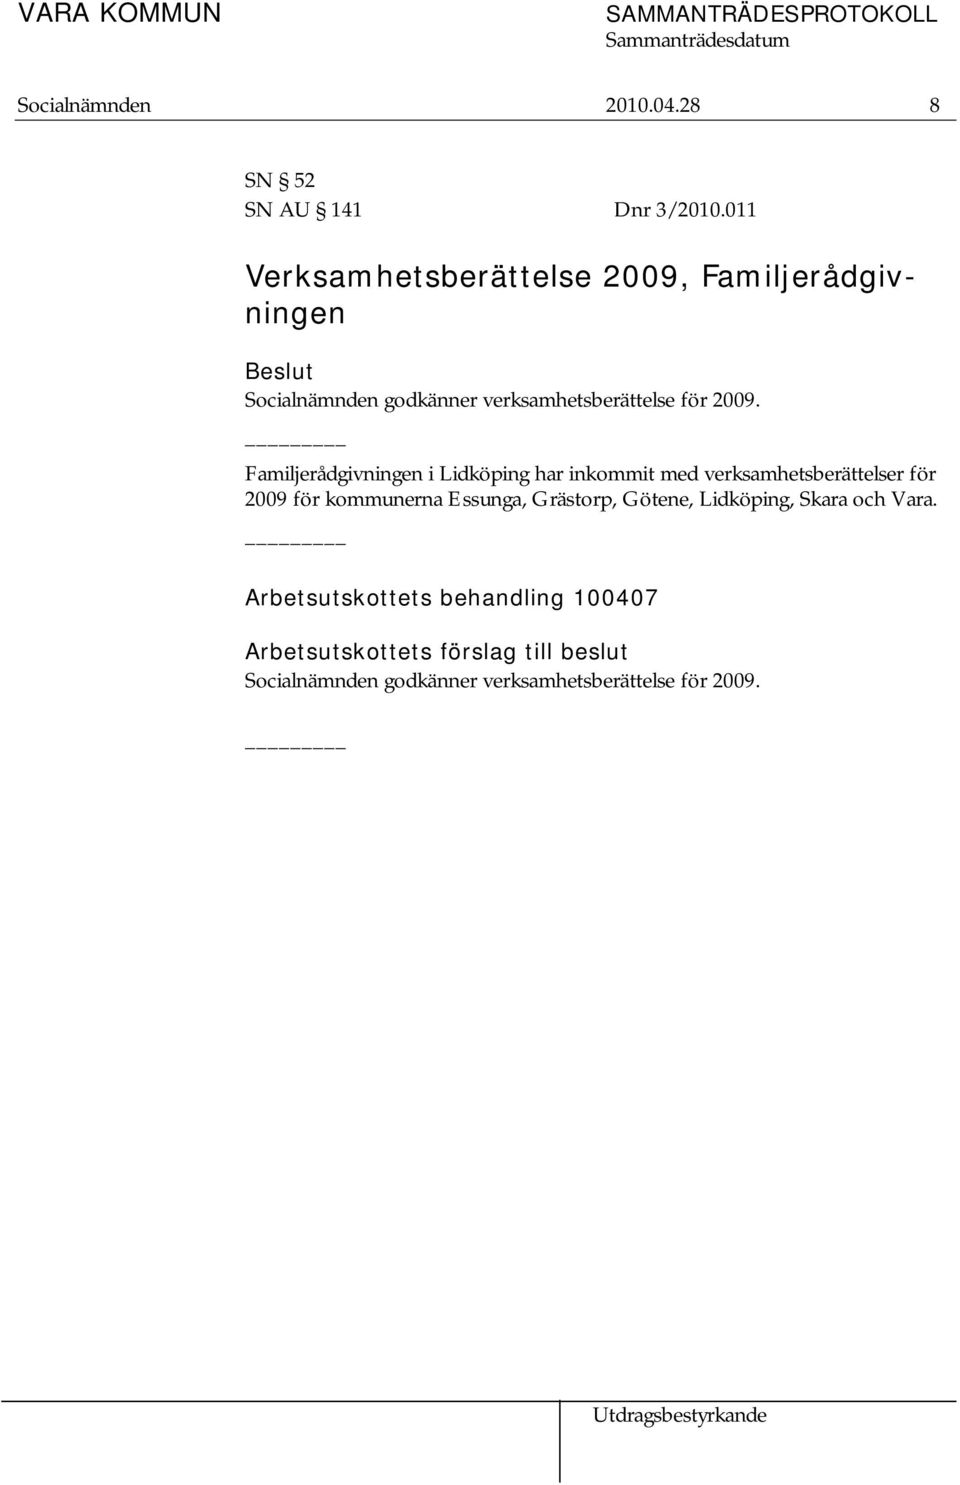 Familjerådgivningen i Lidköping har inkommit med verksamhetsberättelser för 2009 för kommunerna Essunga,